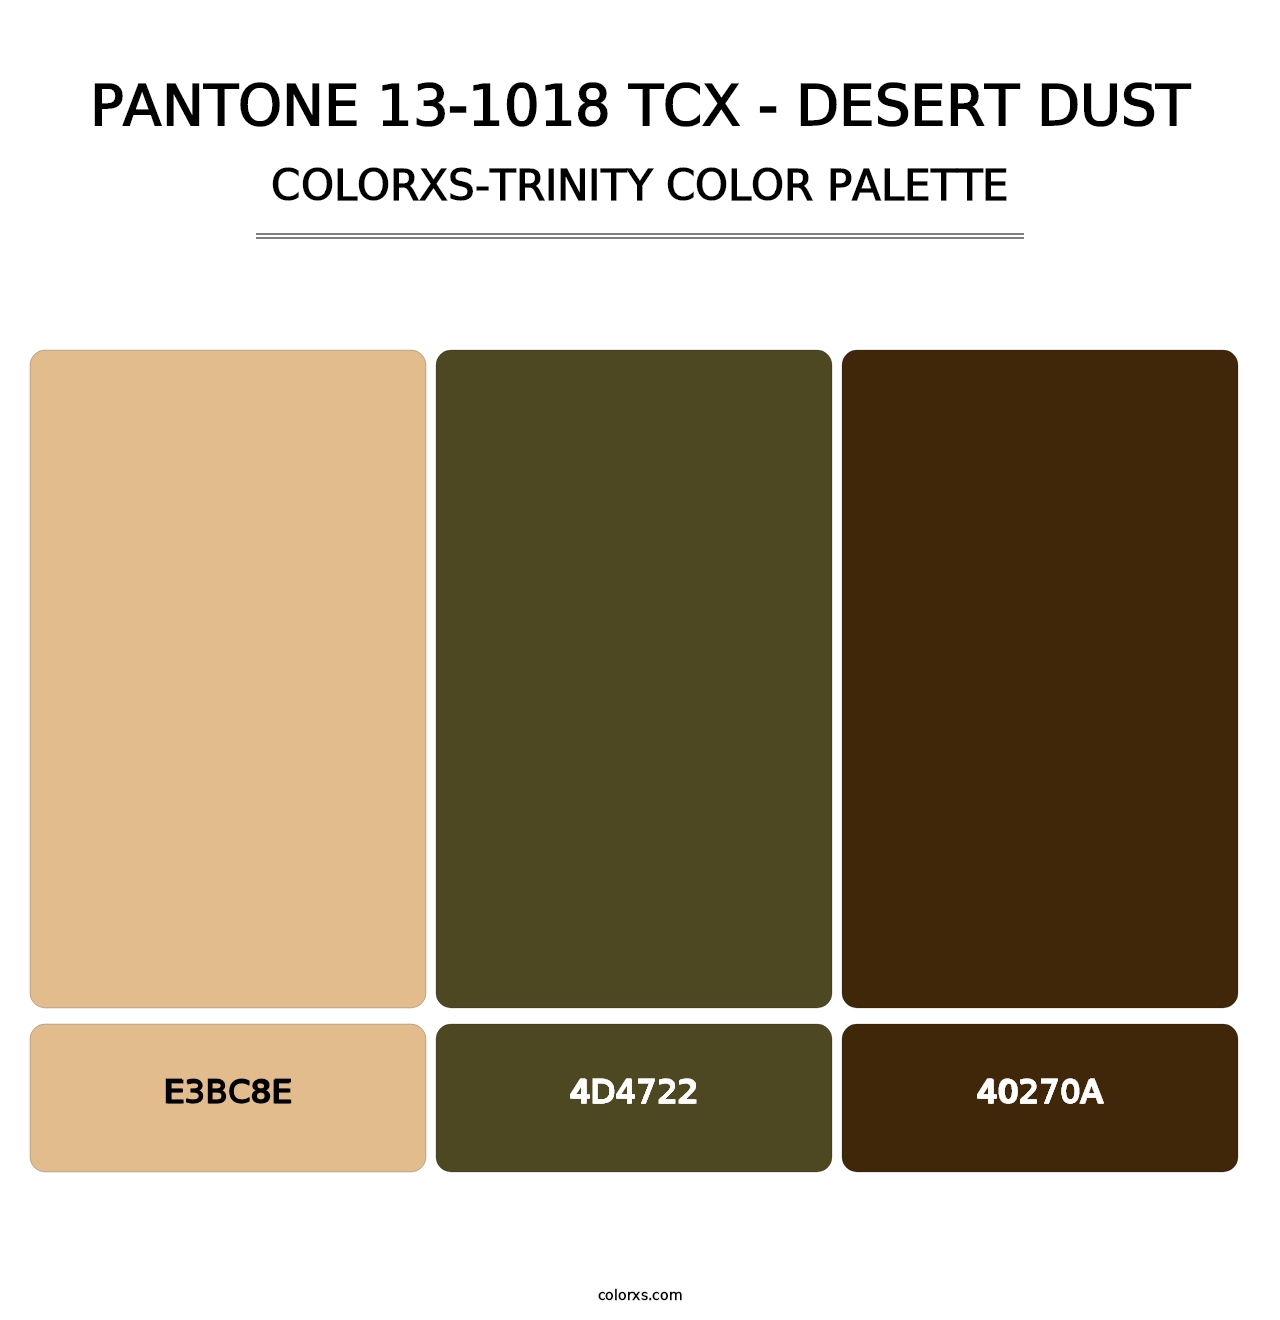 PANTONE 13-1018 TCX - Desert Dust - Colorxs Trinity Palette